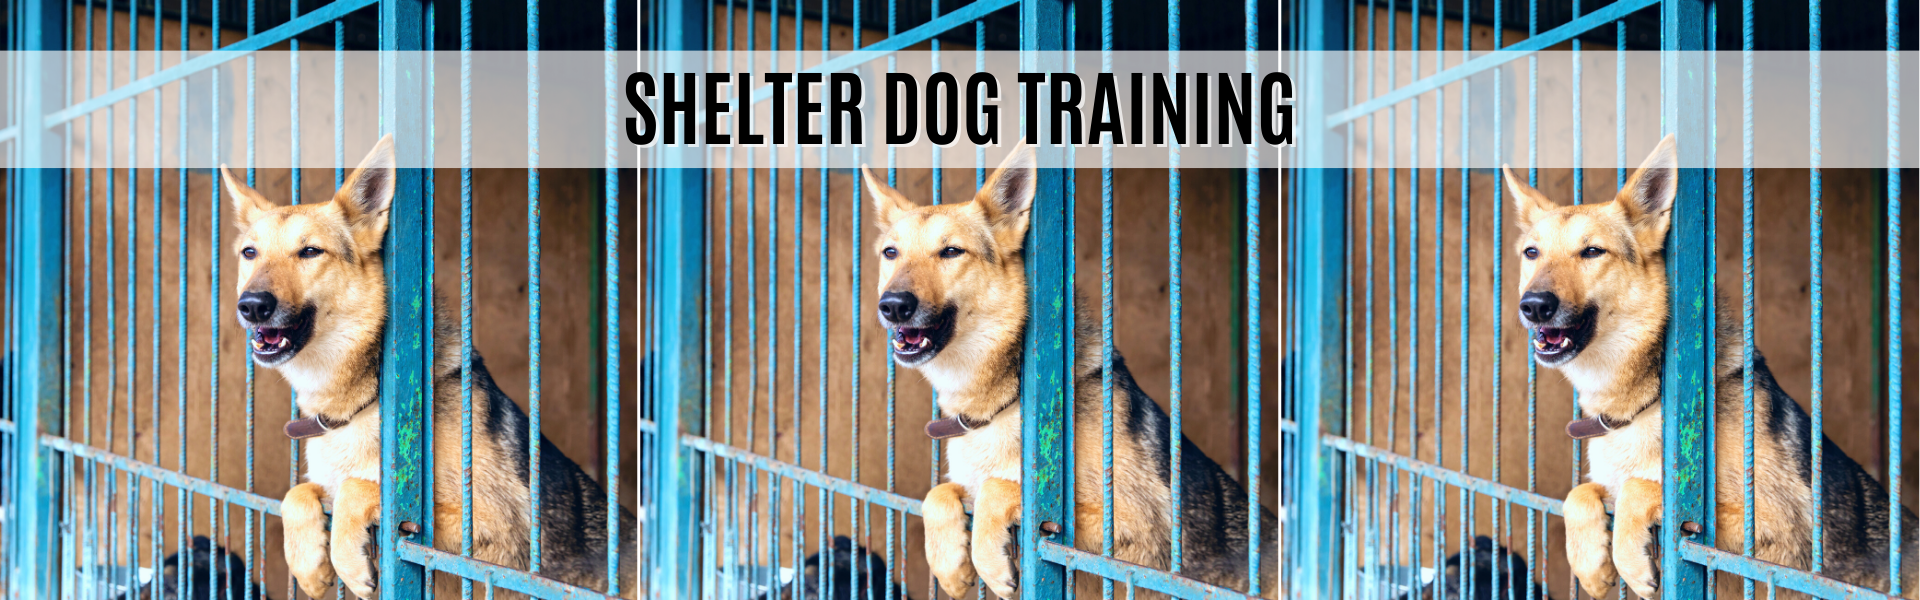 shelter dog training